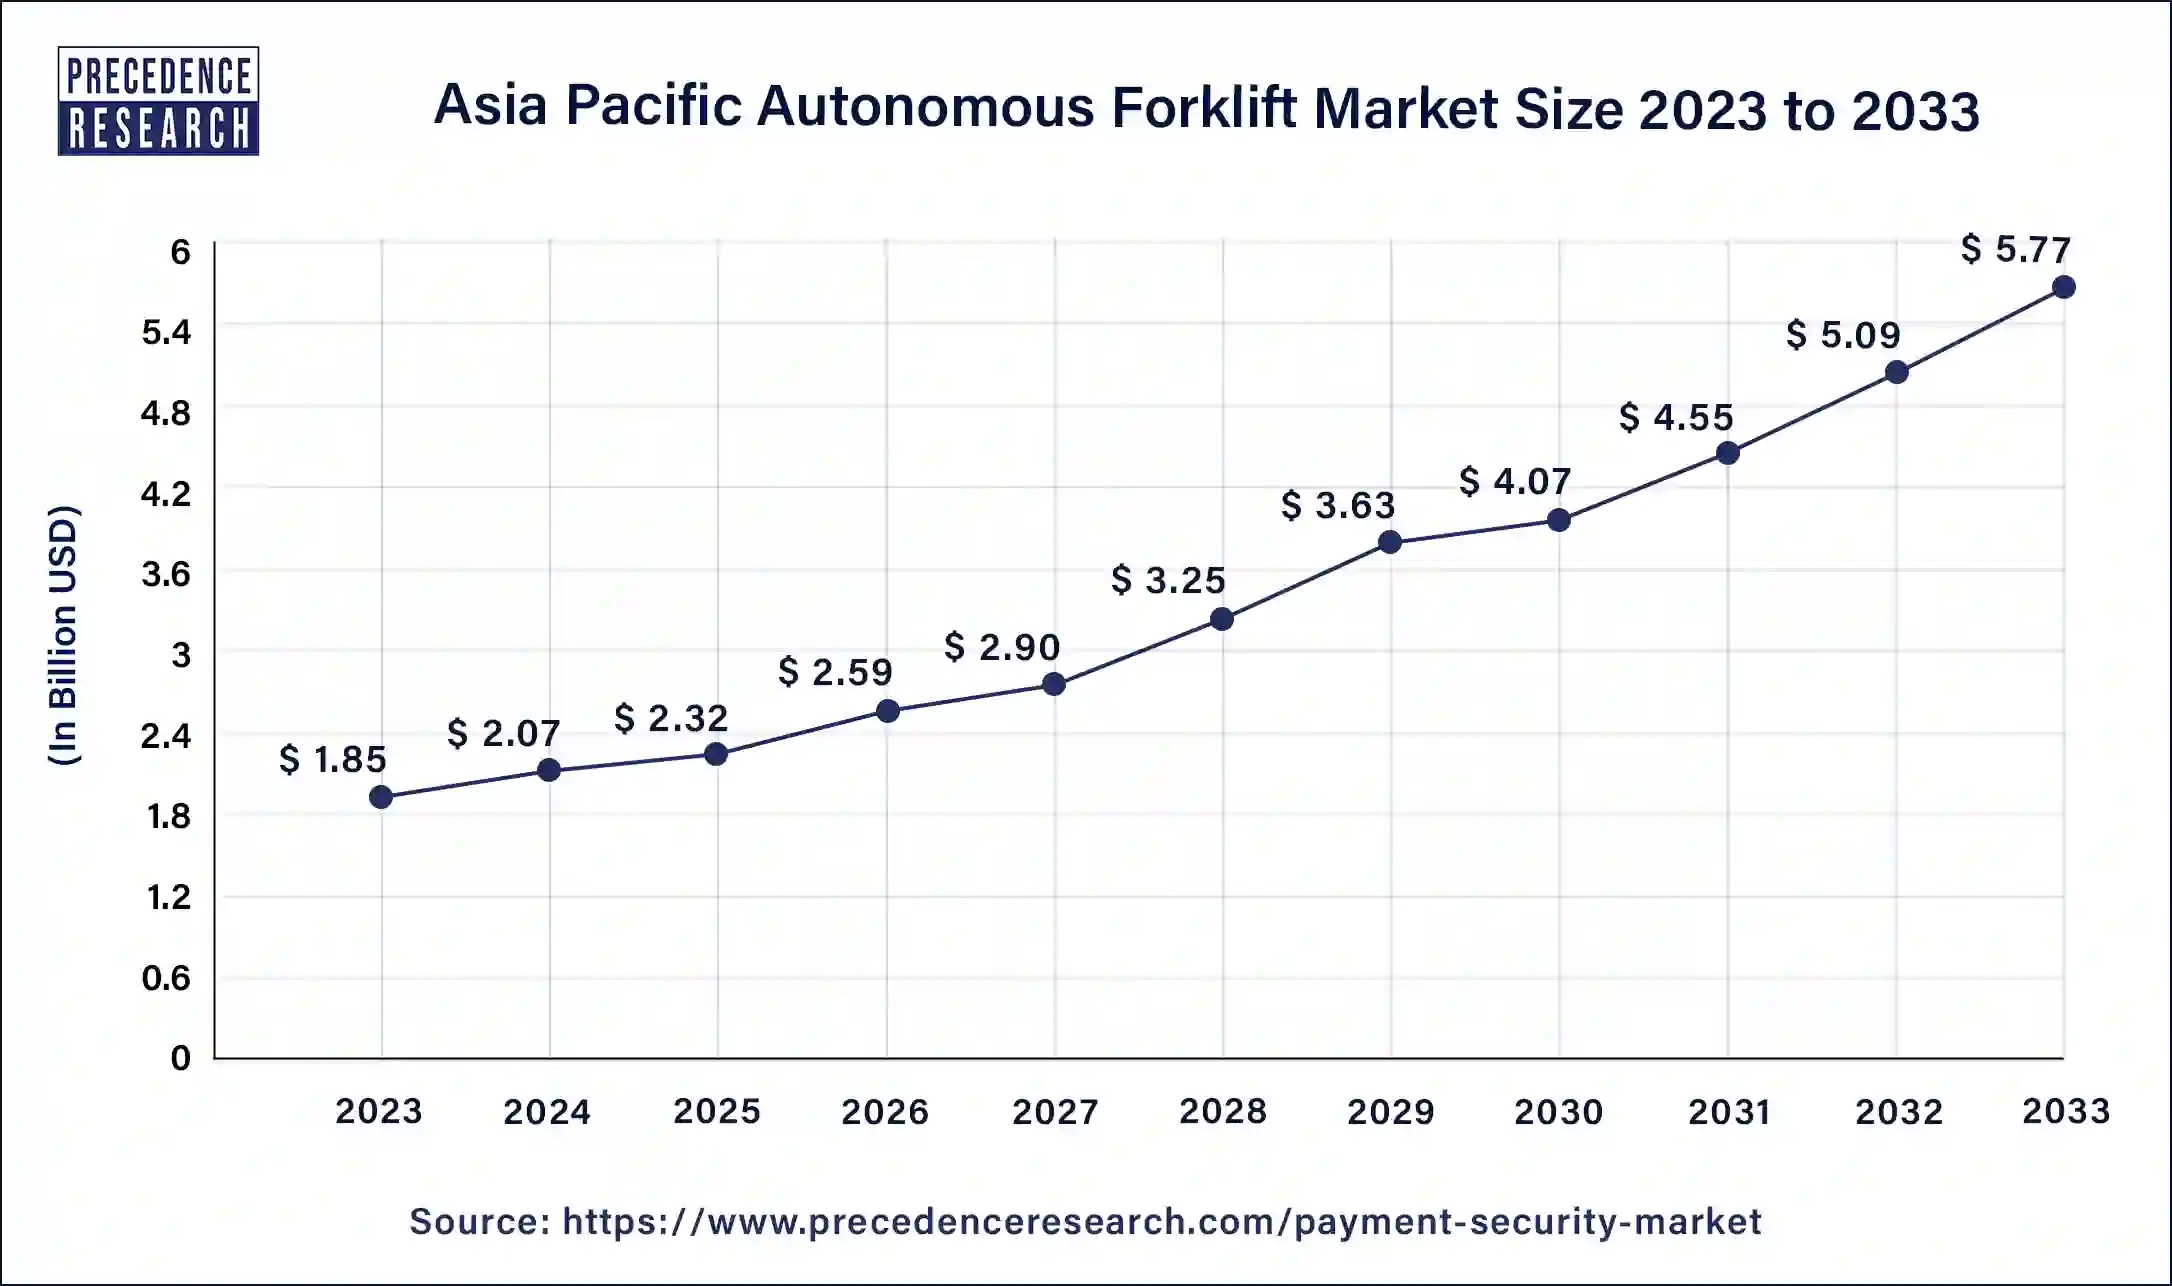 Asia Pacific Autonomous Forklift Market Size 2024 to 2033